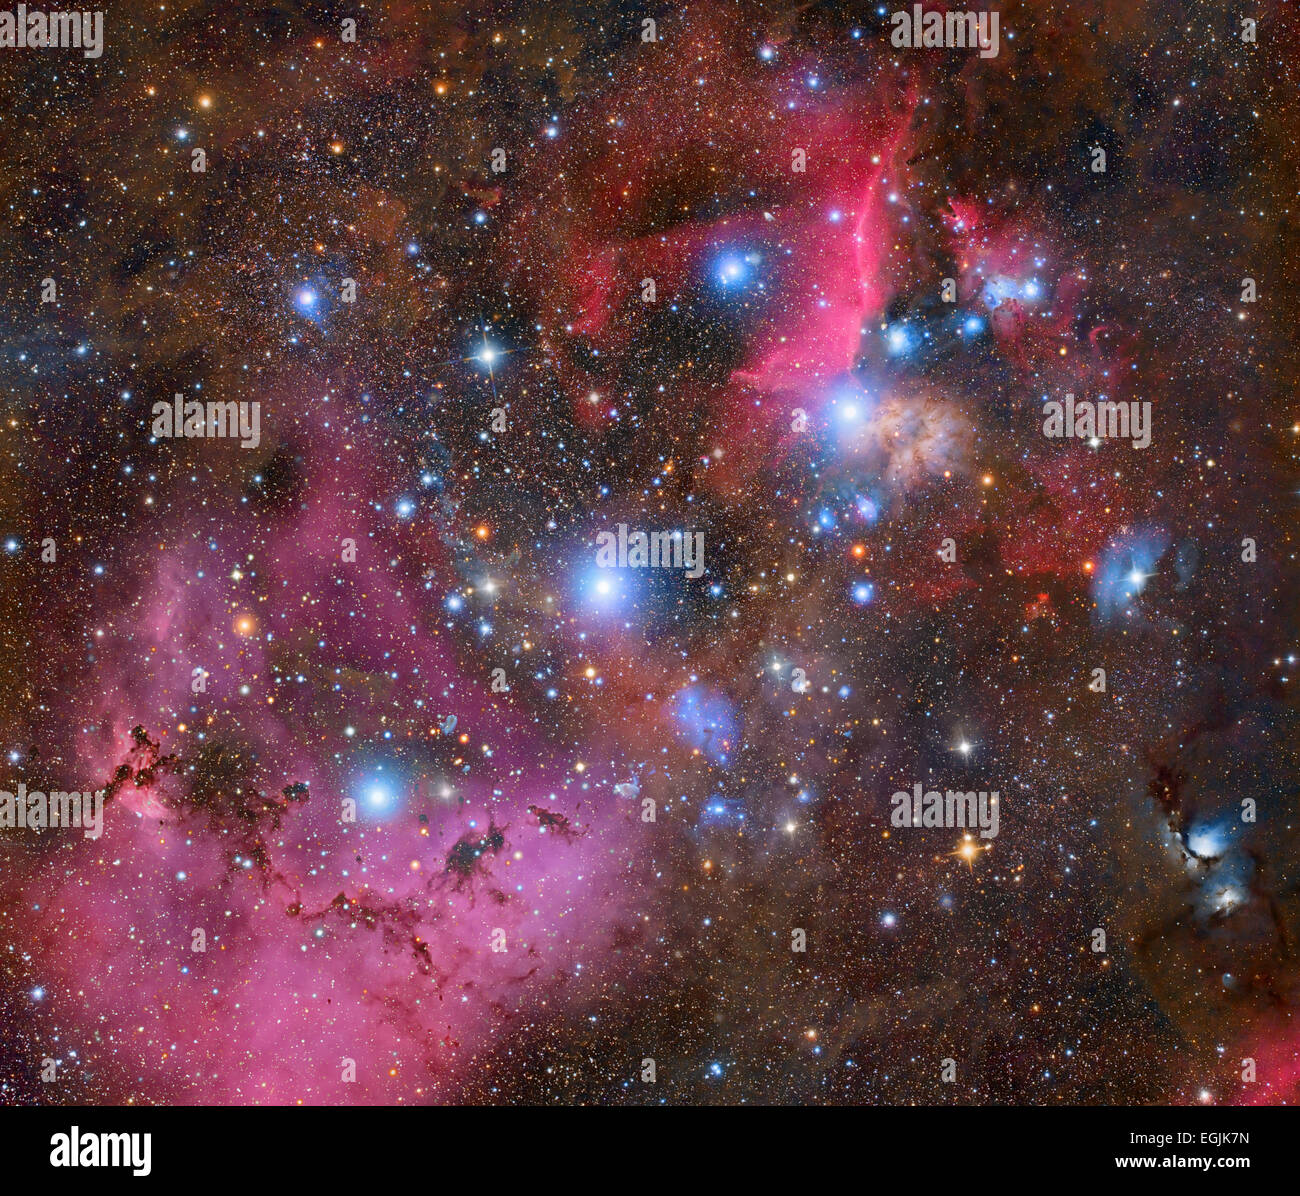 Starfield with nebulae Stock Photo